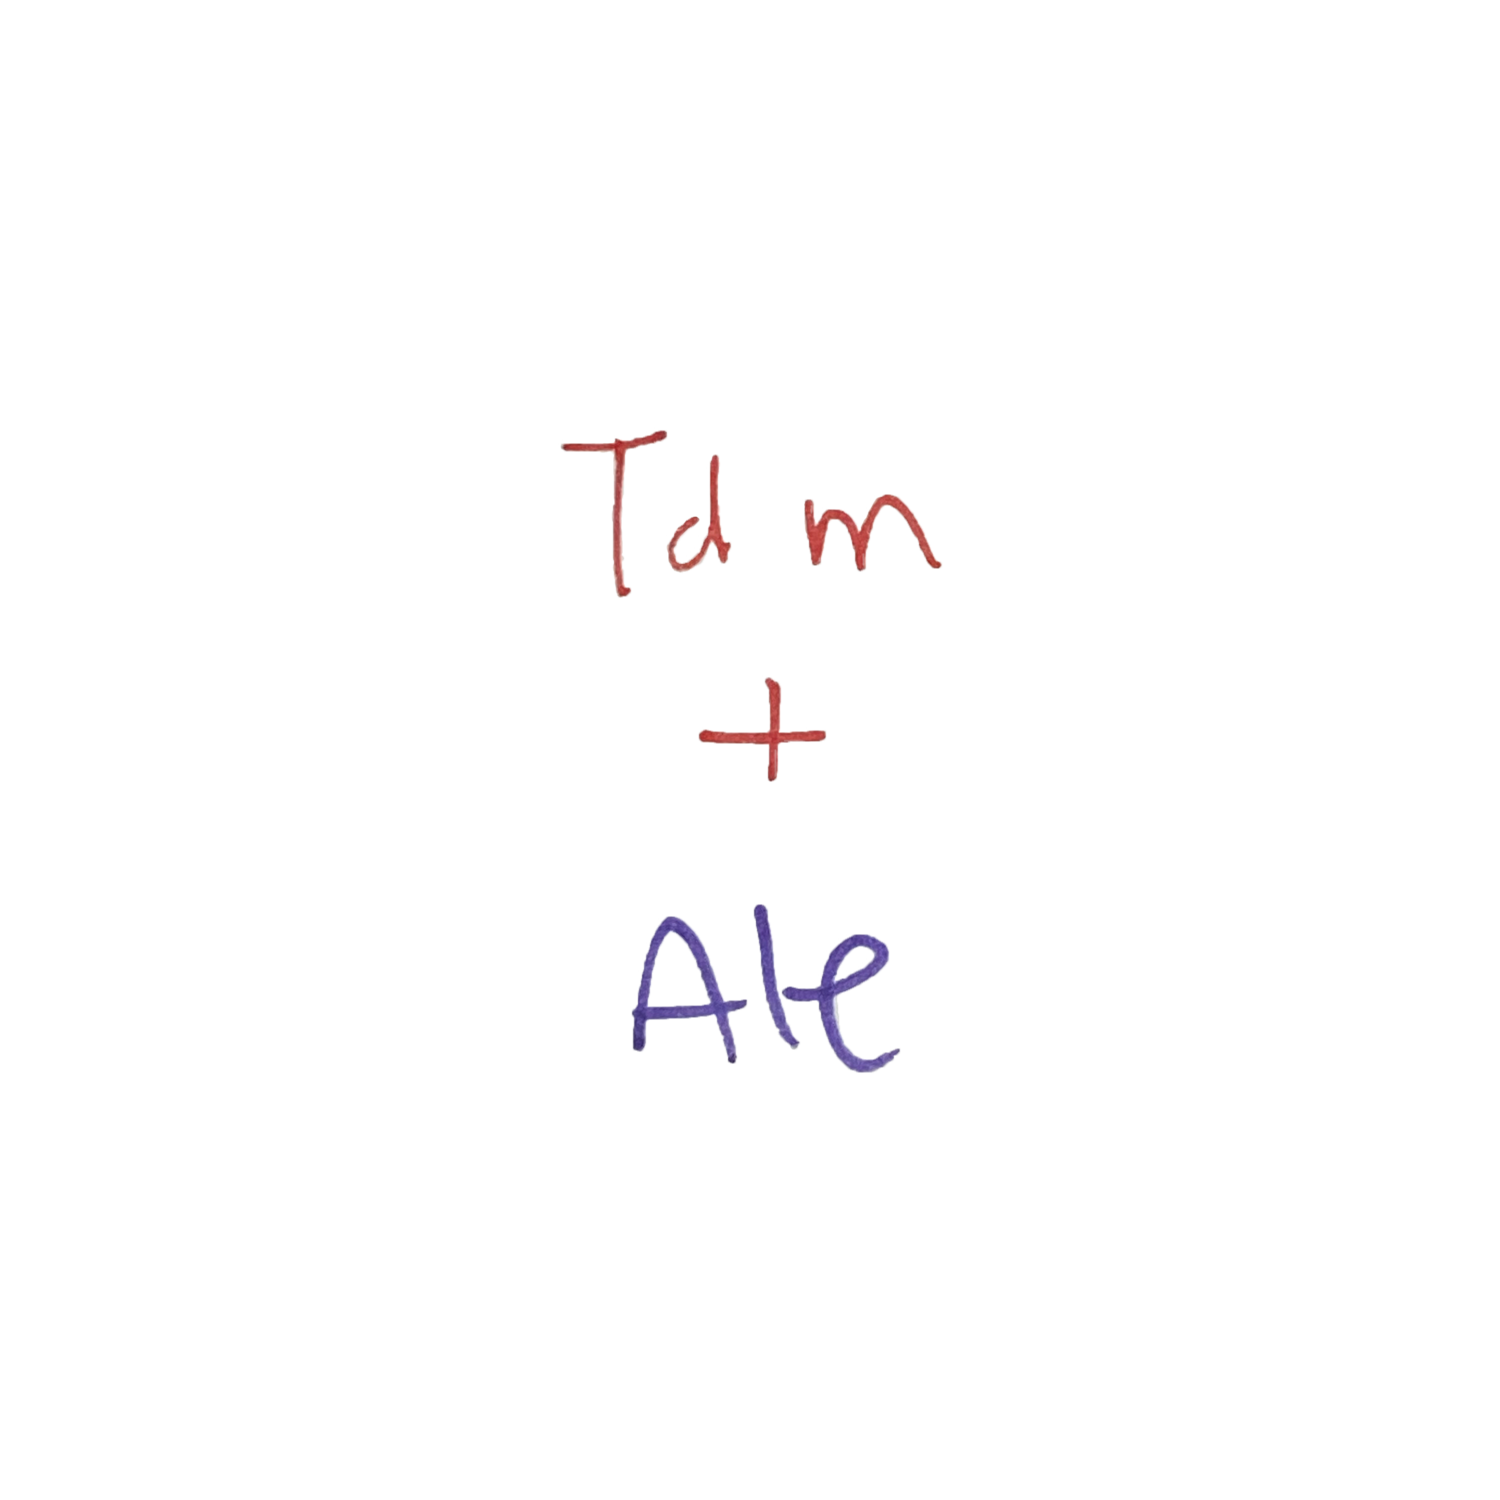 tdm+ale